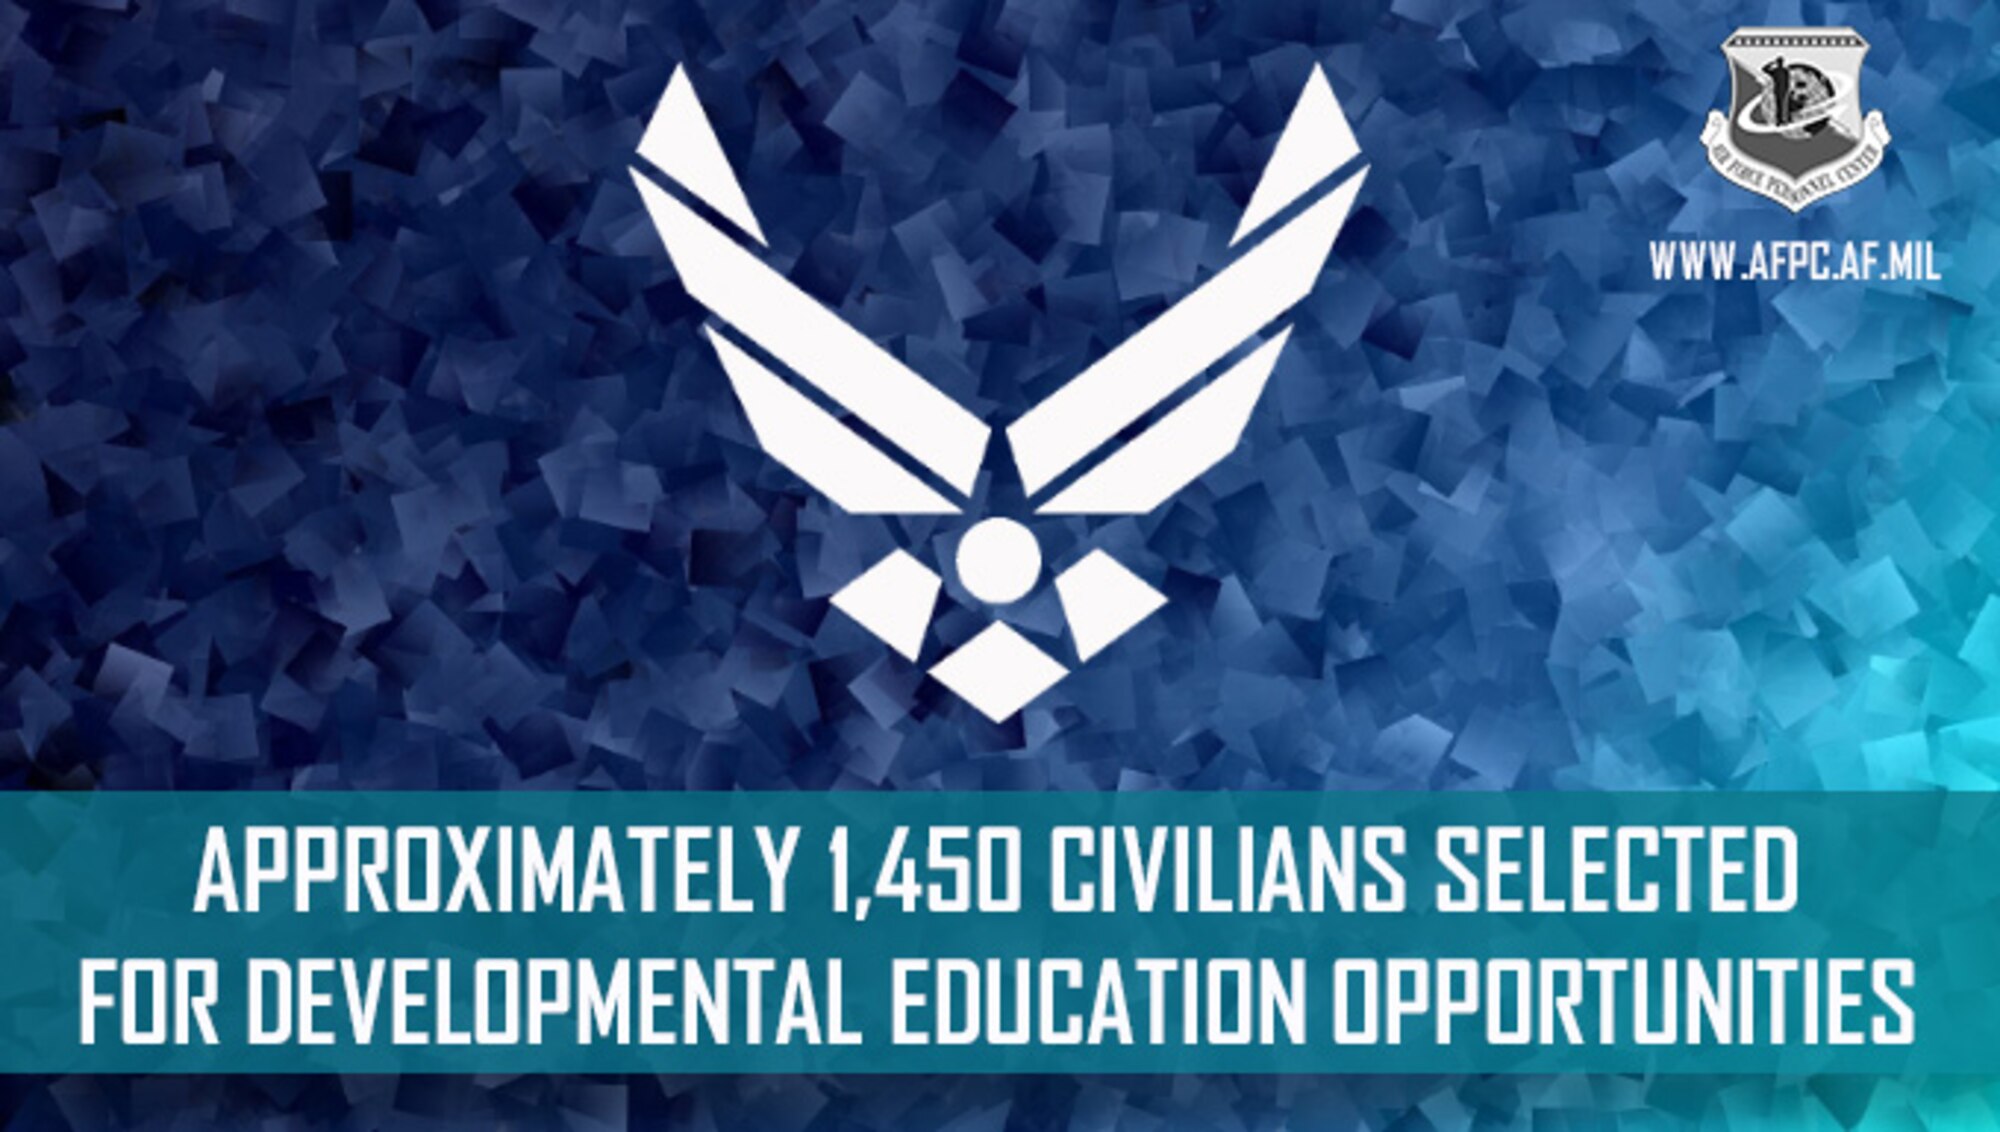 1,450+ civilians for development education.